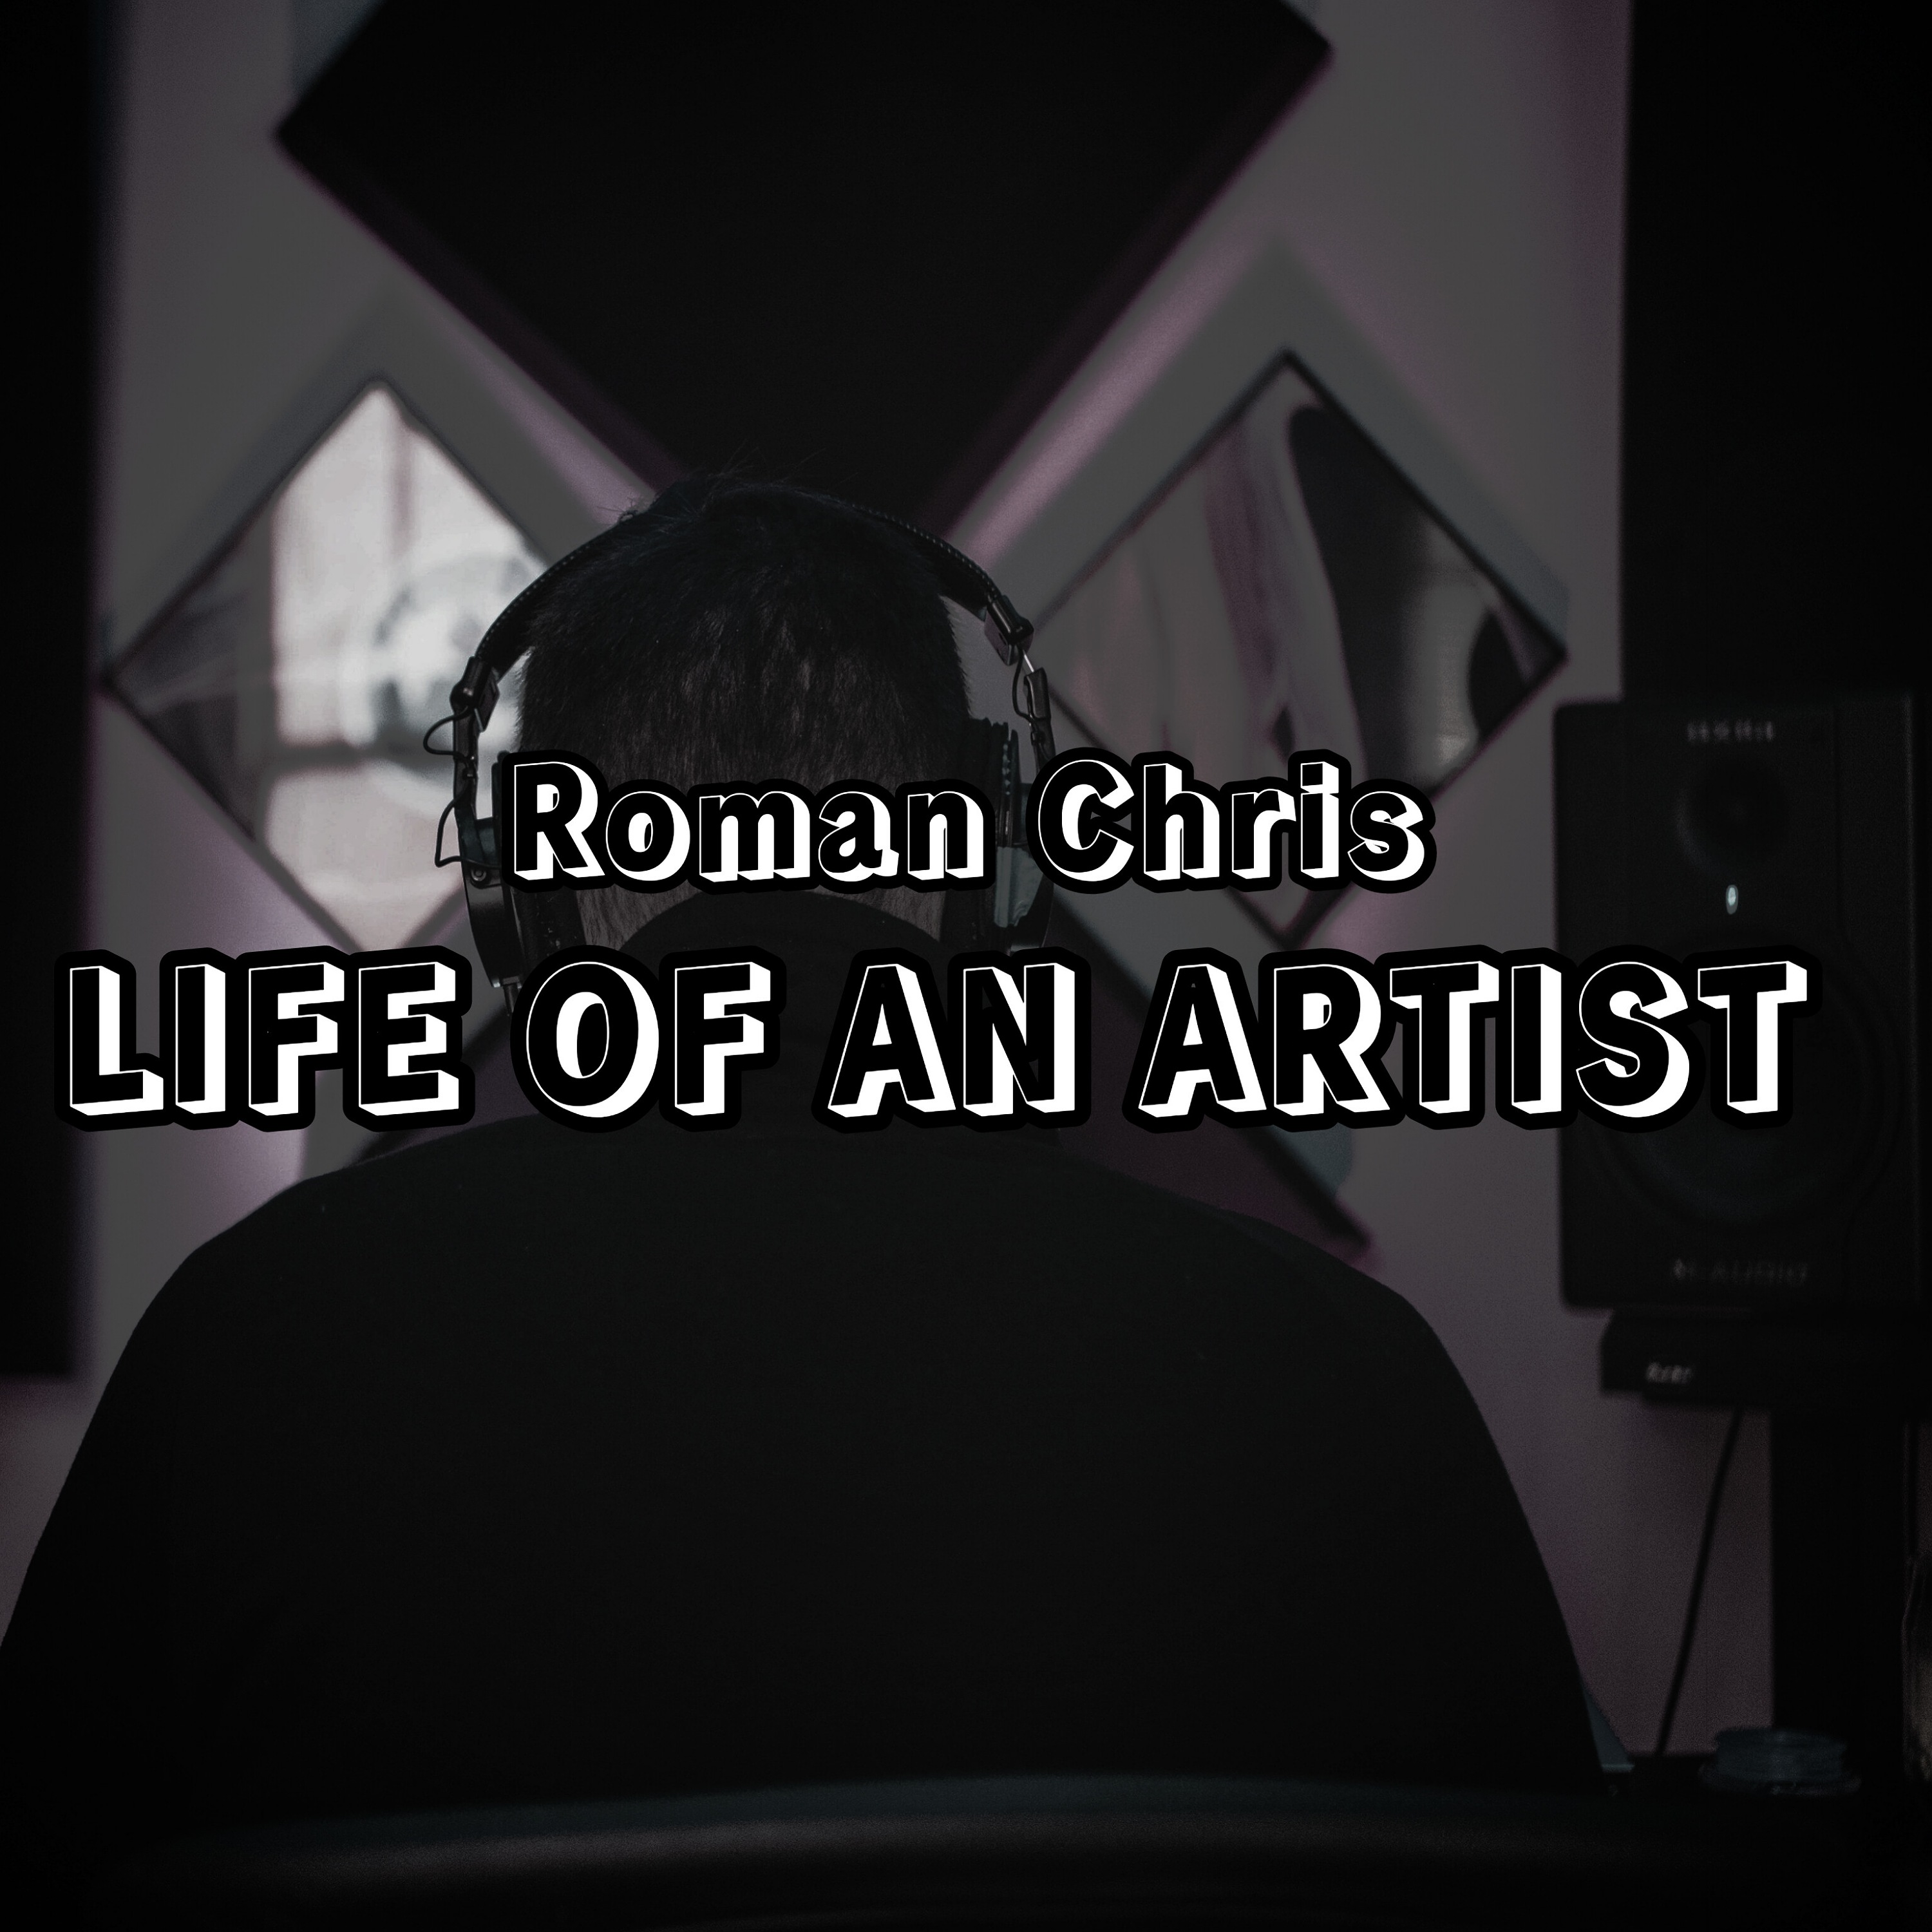 Life of an artist - Roman Chris